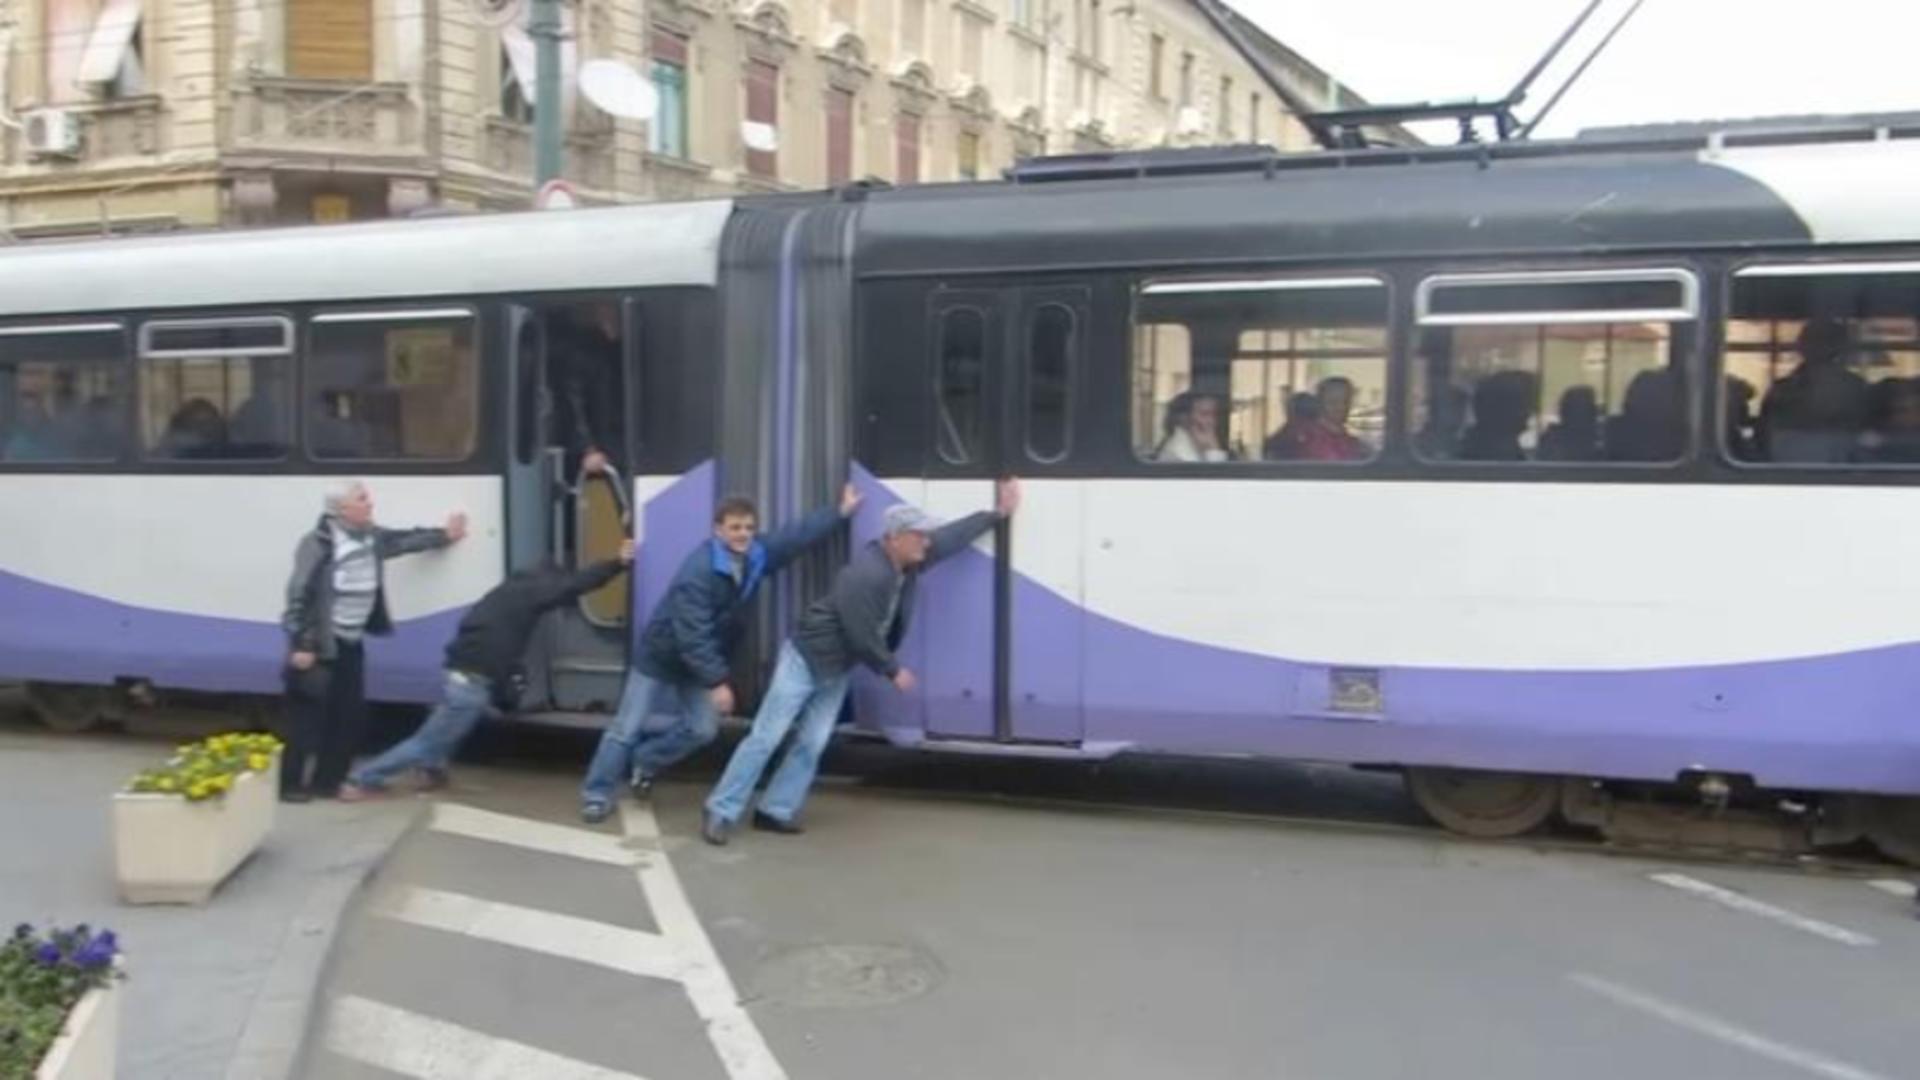 Tramvai împins de călători după ce s-a oprit în mijlocul unei intersecții din Timișoara 